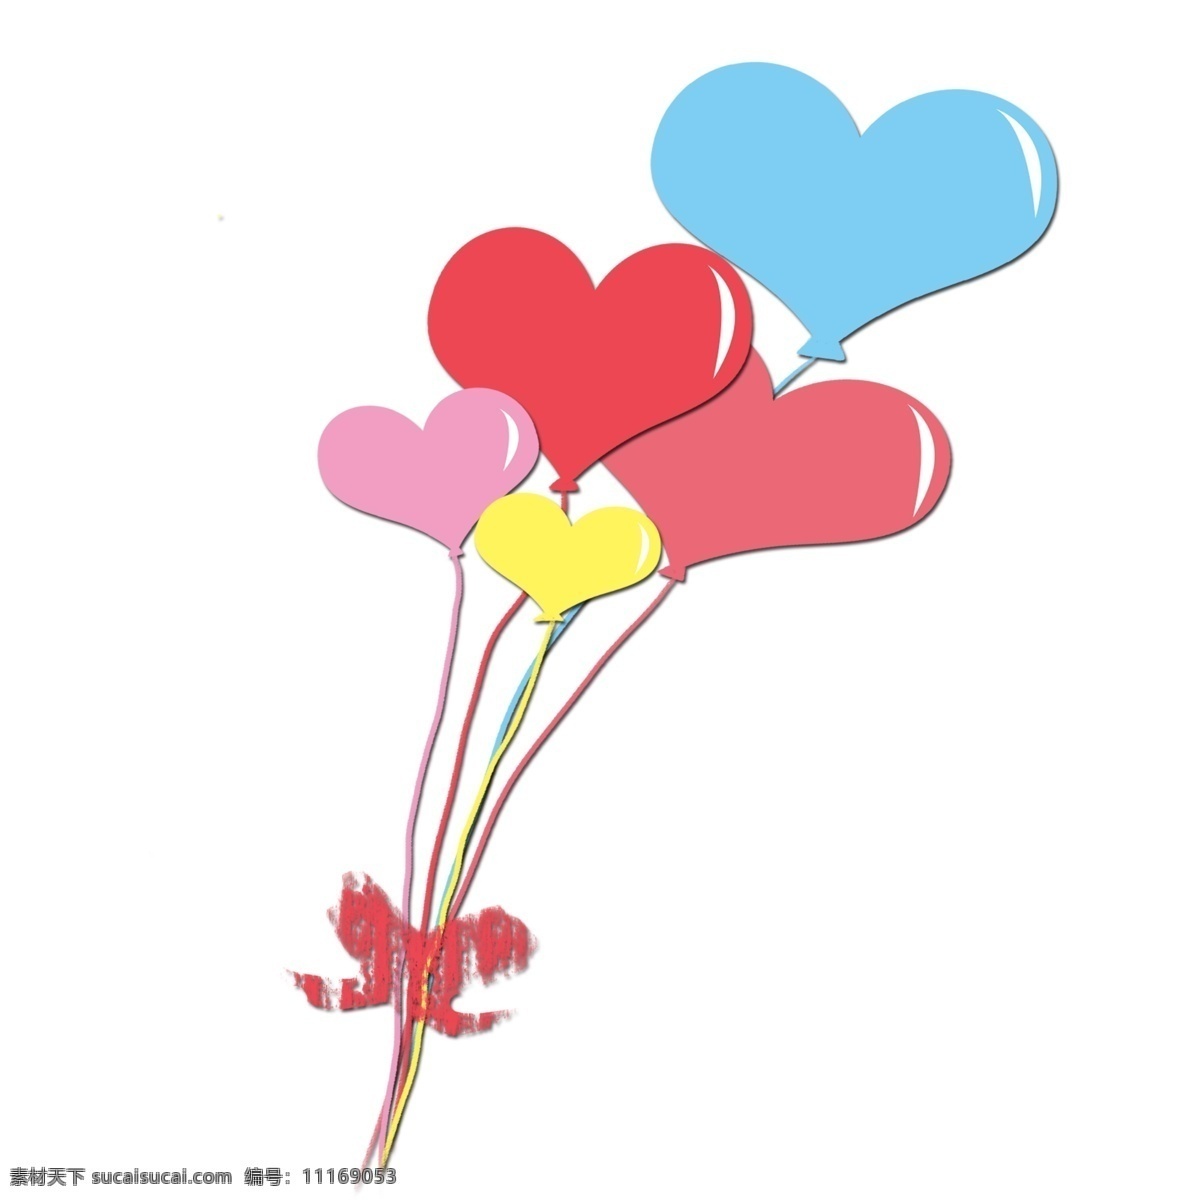 情人节 心形 气球 插画 心形气球 气球装饰 漂浮的气球 浪漫爱情 节日装饰 情人节插画 卡通气球